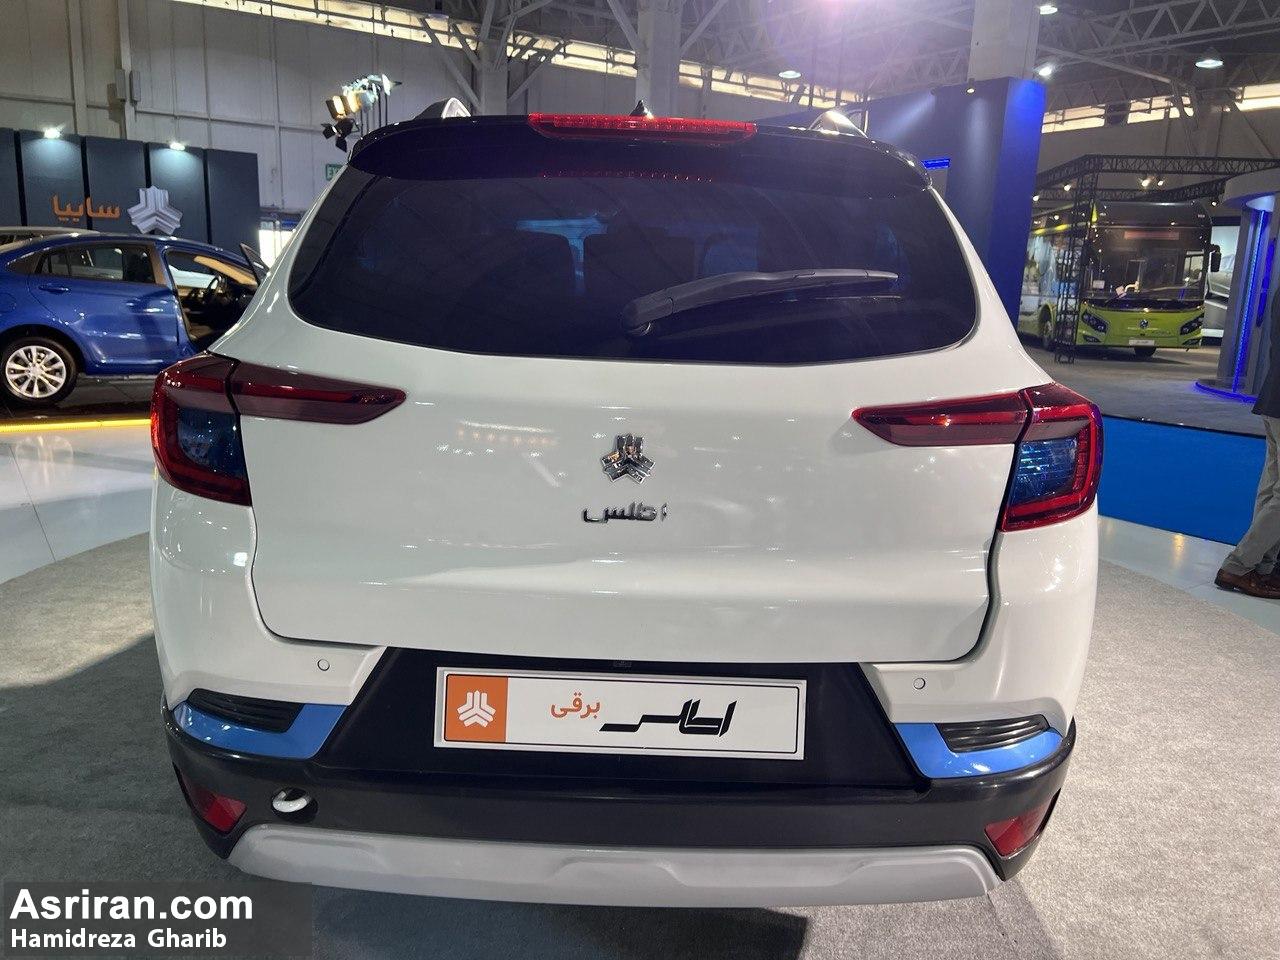 نمایش رسمی 2 کراس اوو ری را و اطلس برقی توسط ایران خودرو و سایپا در نمایشگاه تحول خودرو (+عکس و مشخصات 2 خودرو)